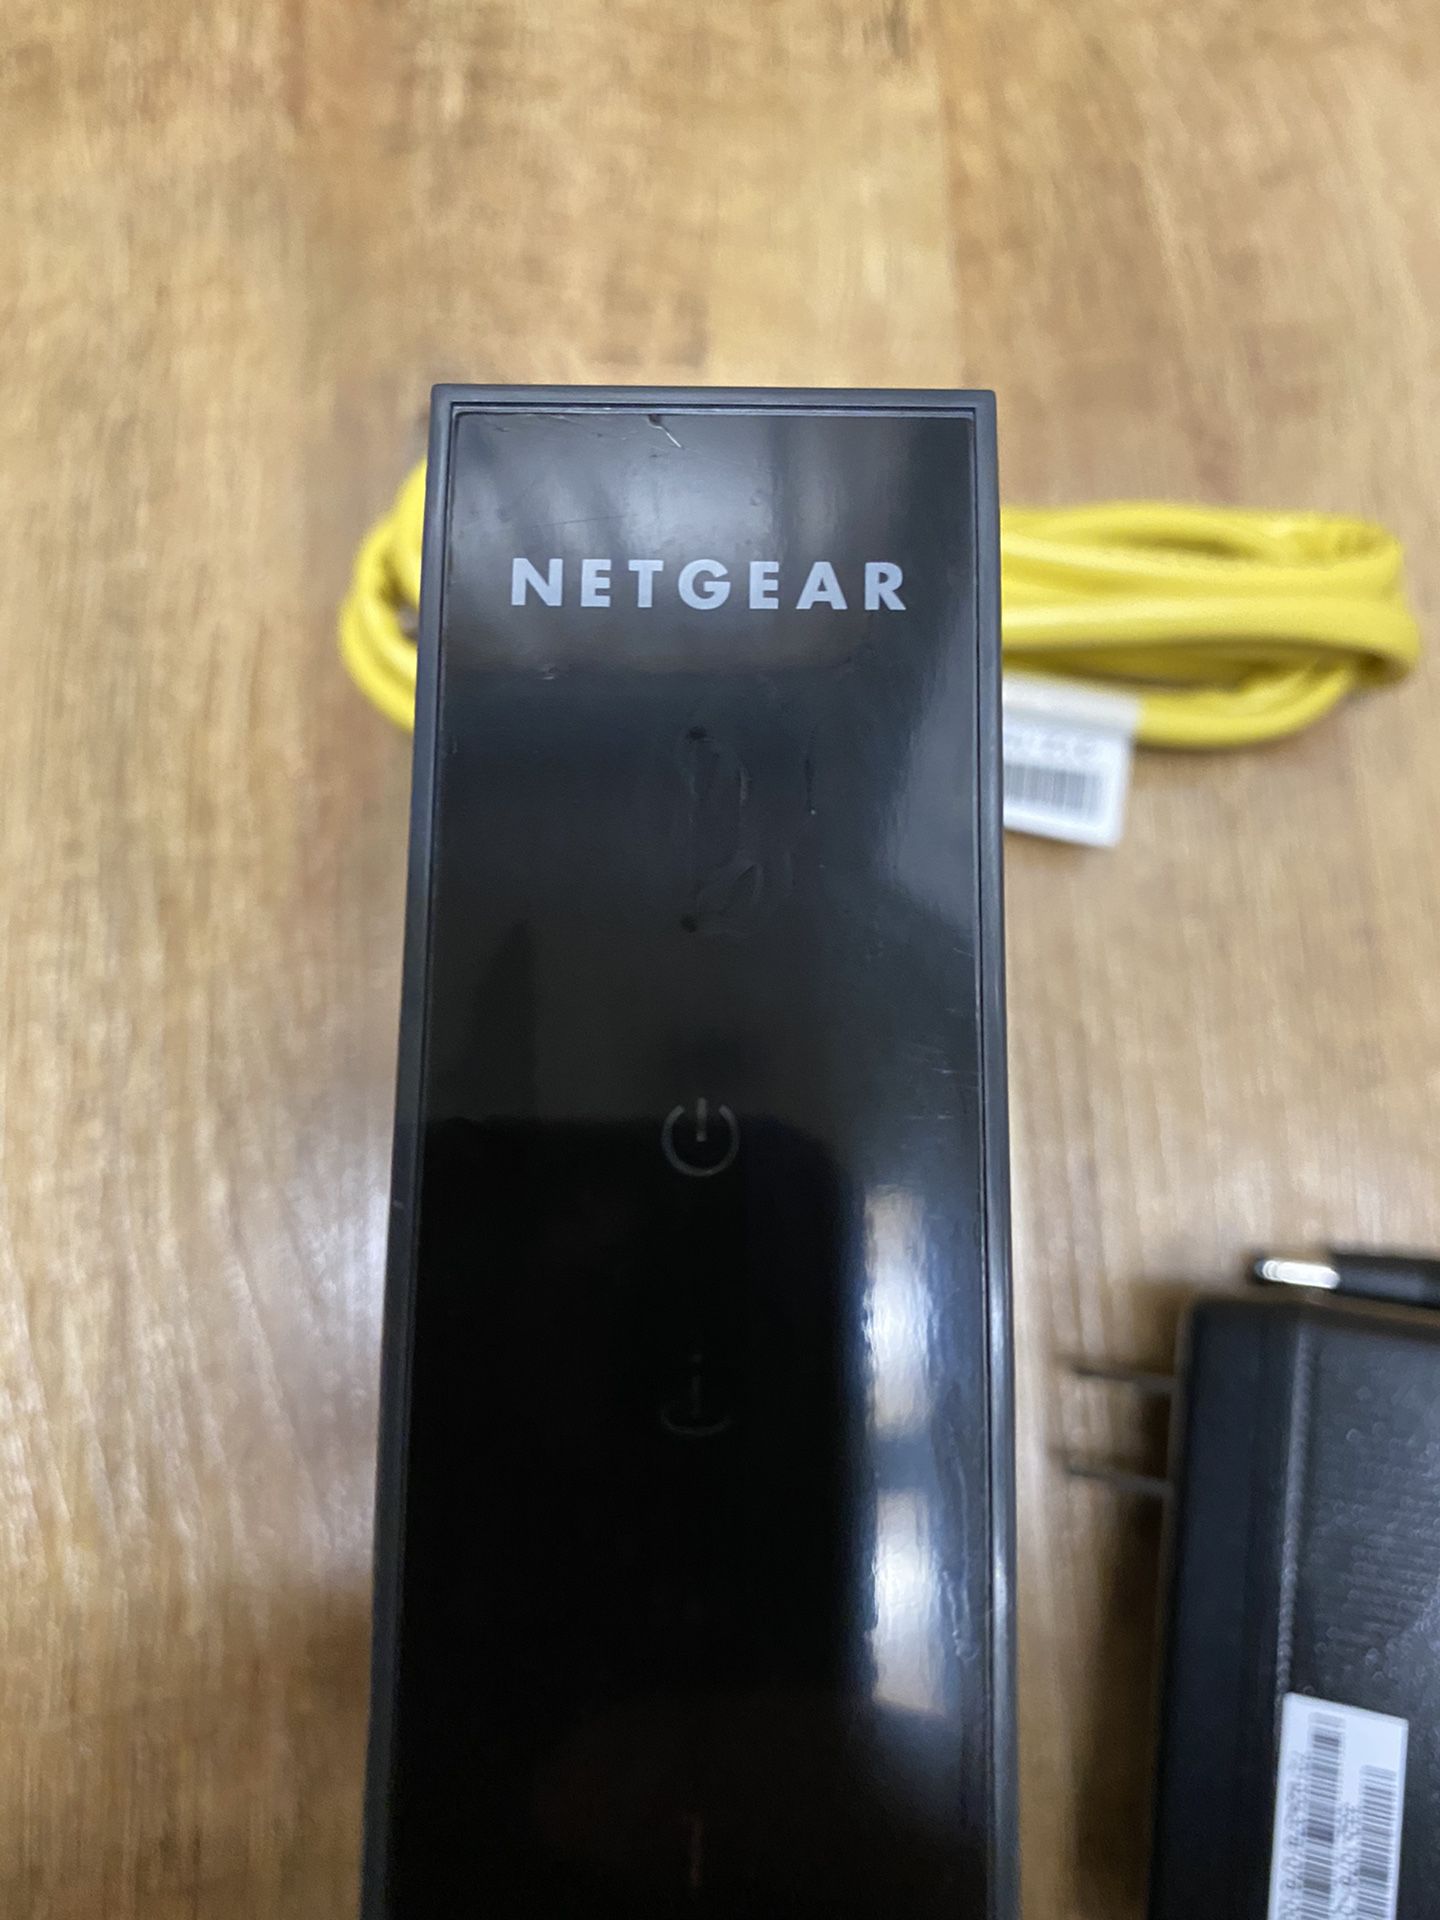 NETGEAR N300 WiFi ROUTER